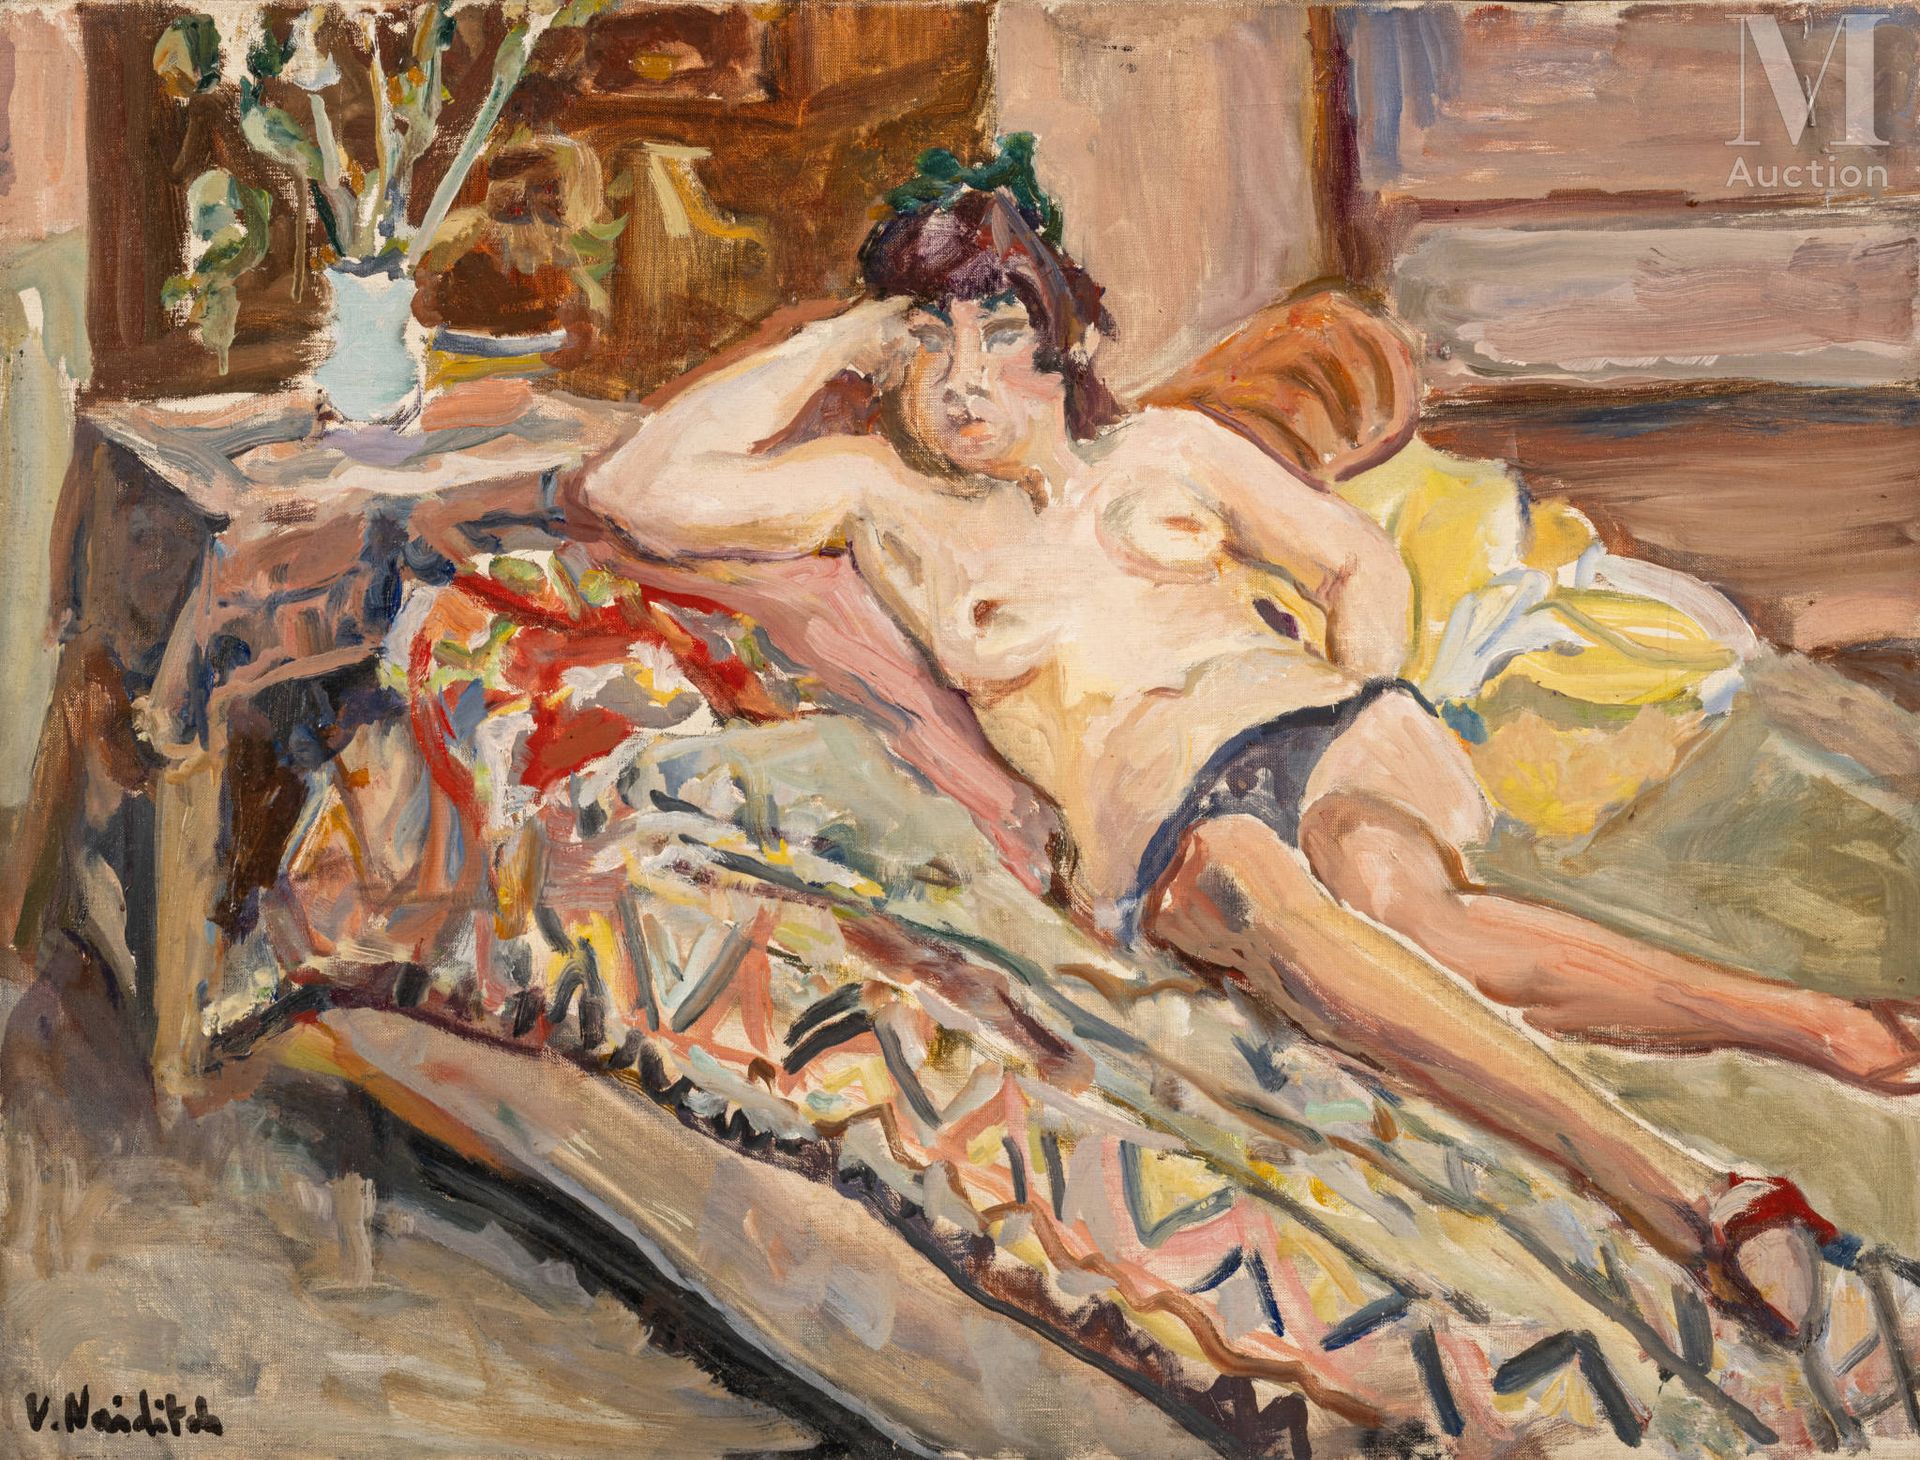 Vladimir NAIDITCH (Moscou 1903 - Paris 1981) Desnudo en el sofá

Óleo sobre lien&hellip;